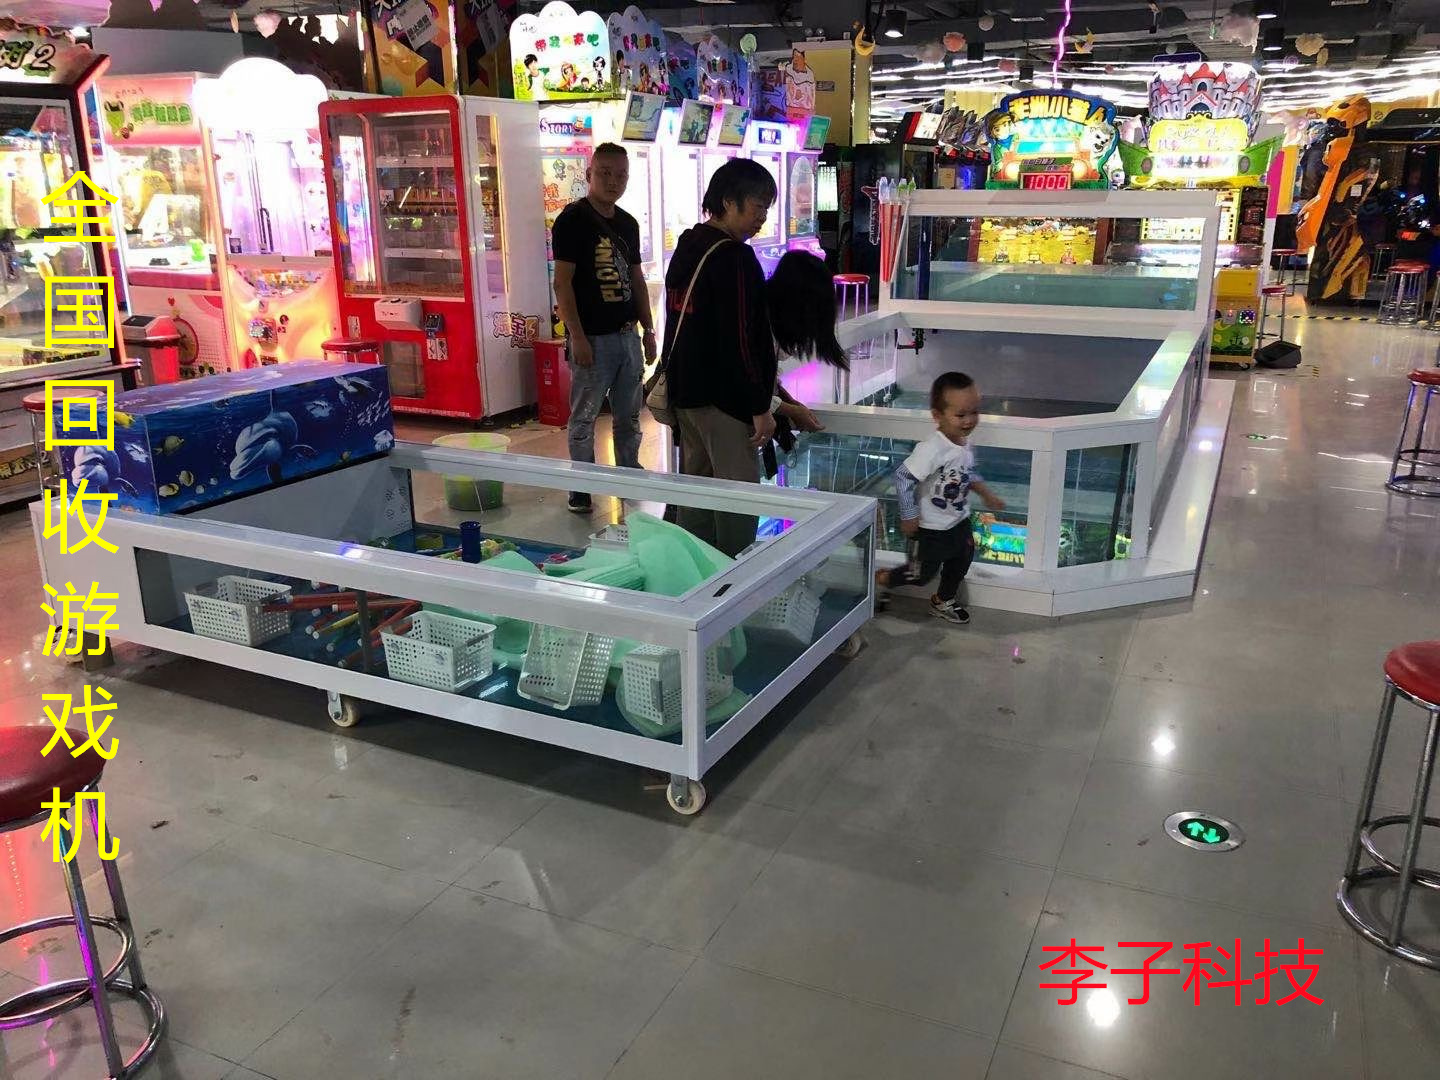 游乐园游戏厅回收 广州李子科技 长沙游戏厅设备回收电话